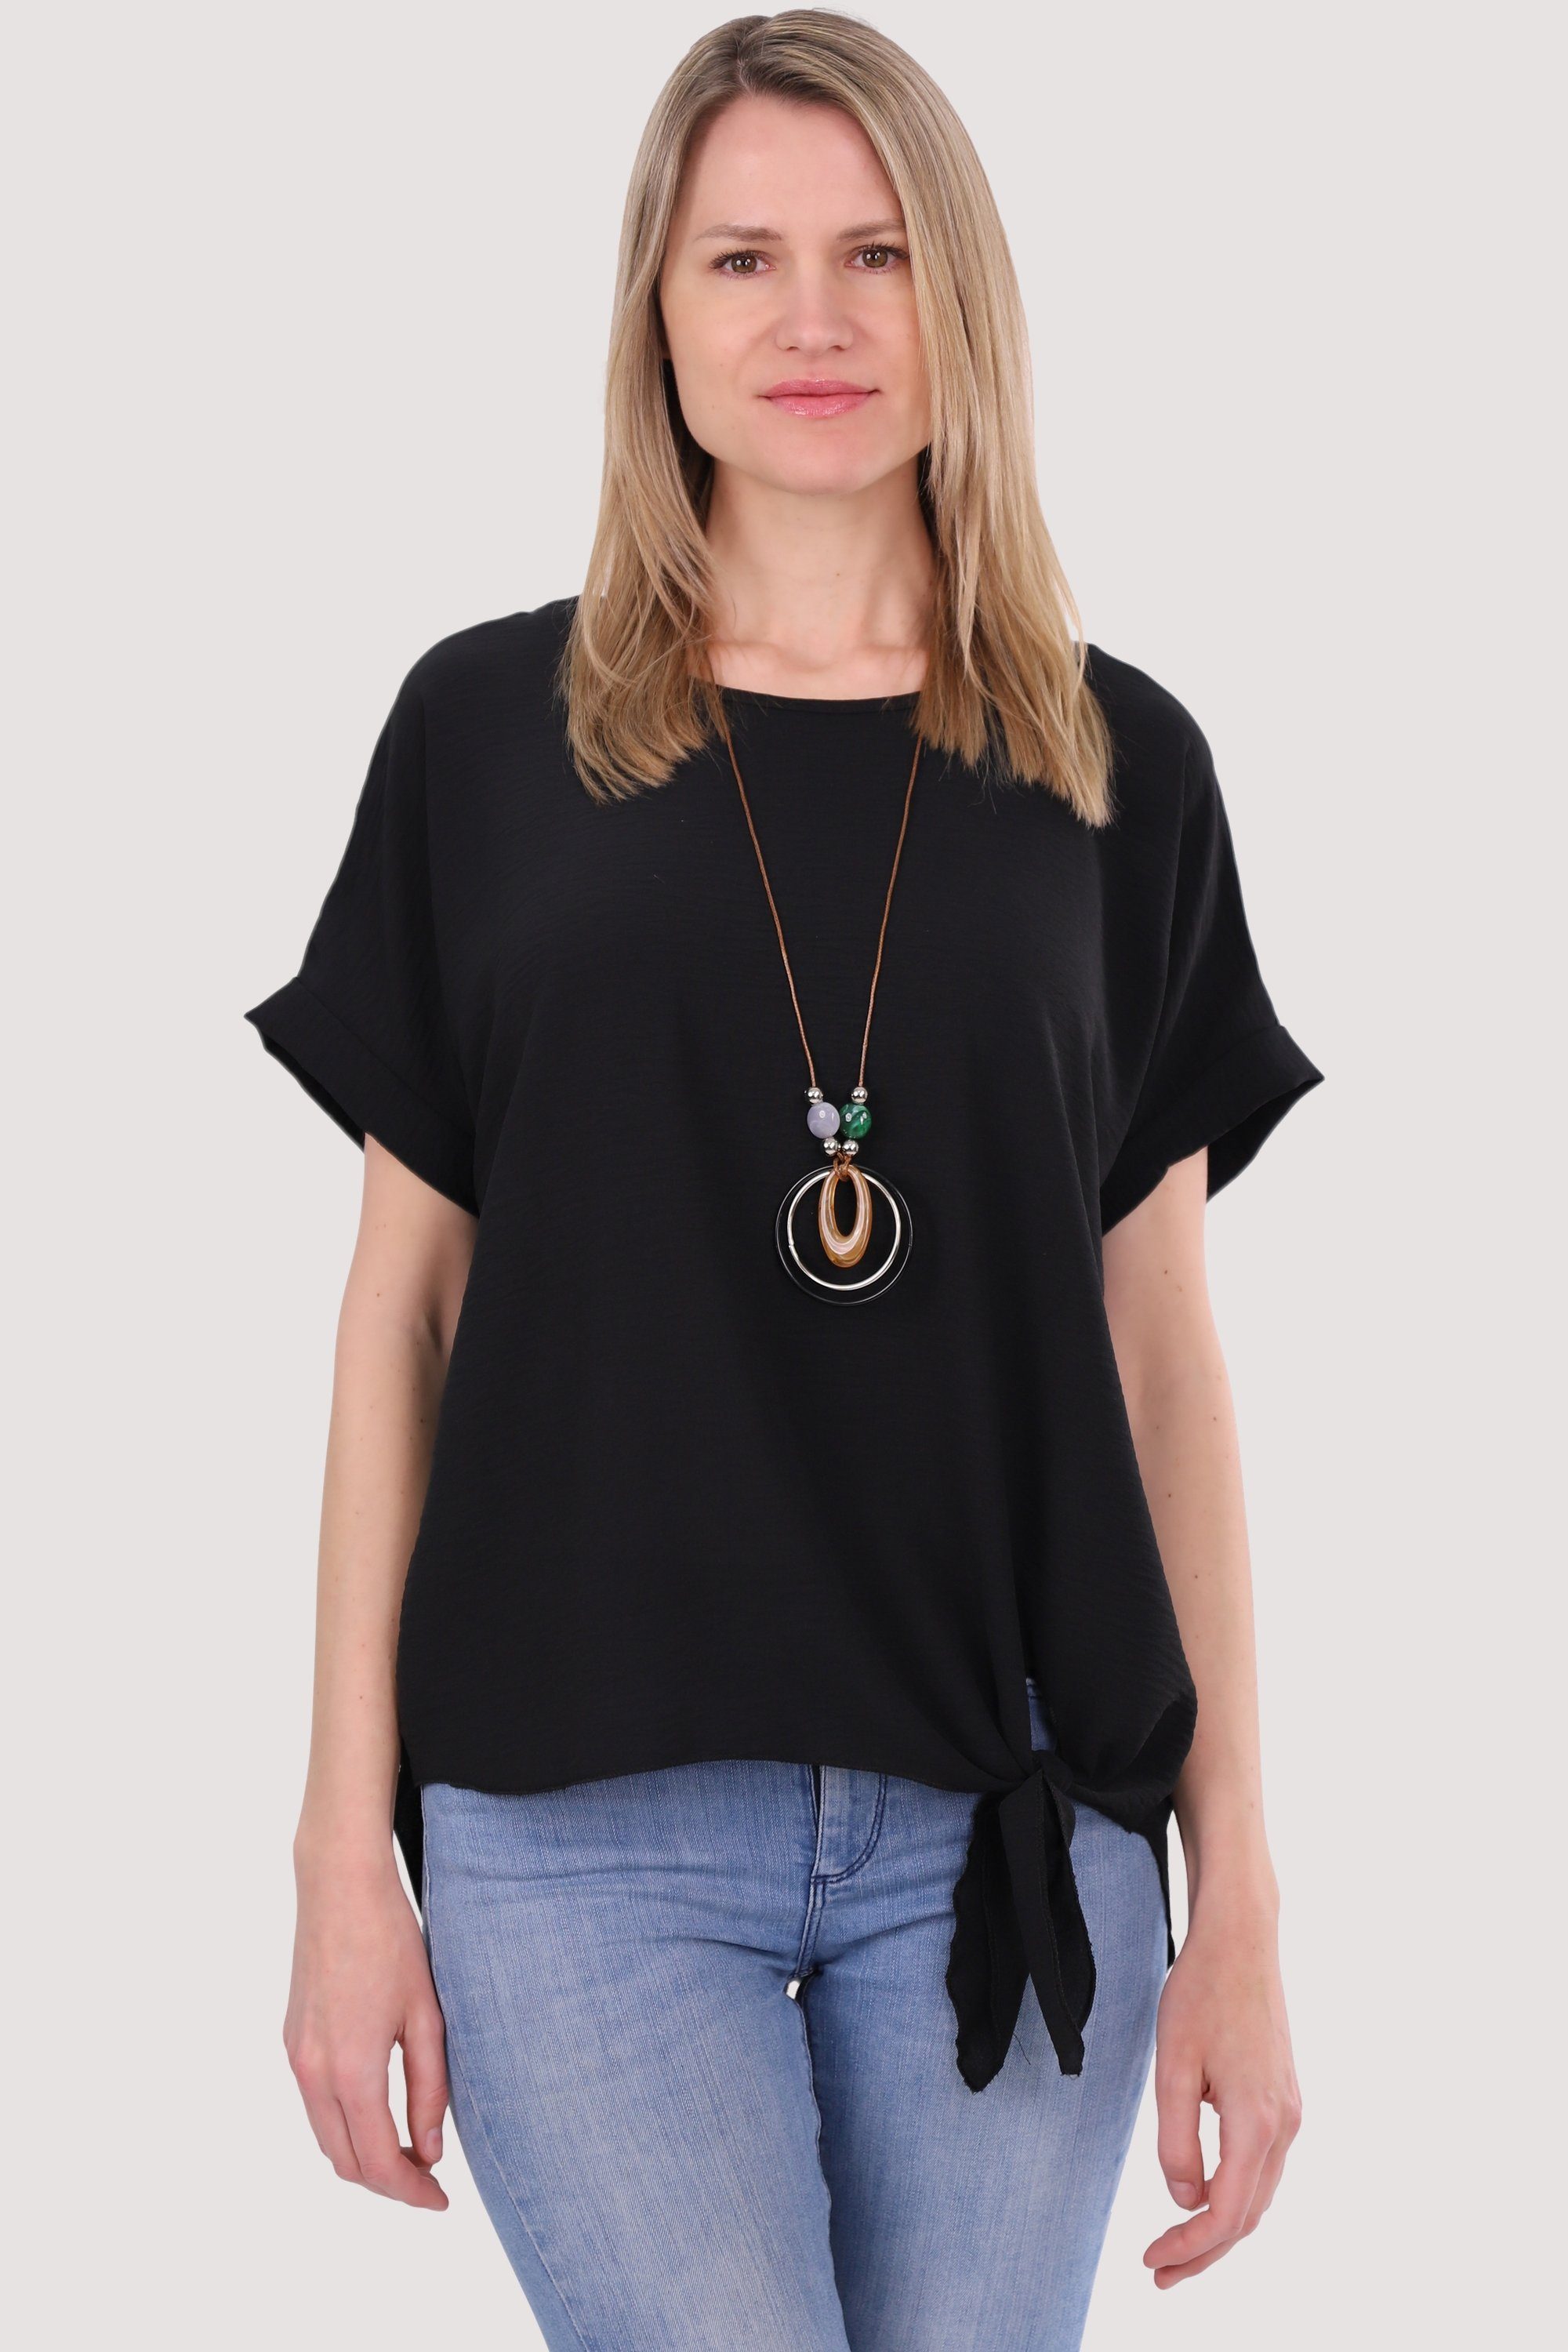 malito more than fashion Blusenshirt 10508 mit Bindeknoten und Kette Einheitsgröße schwarz | T-Shirts